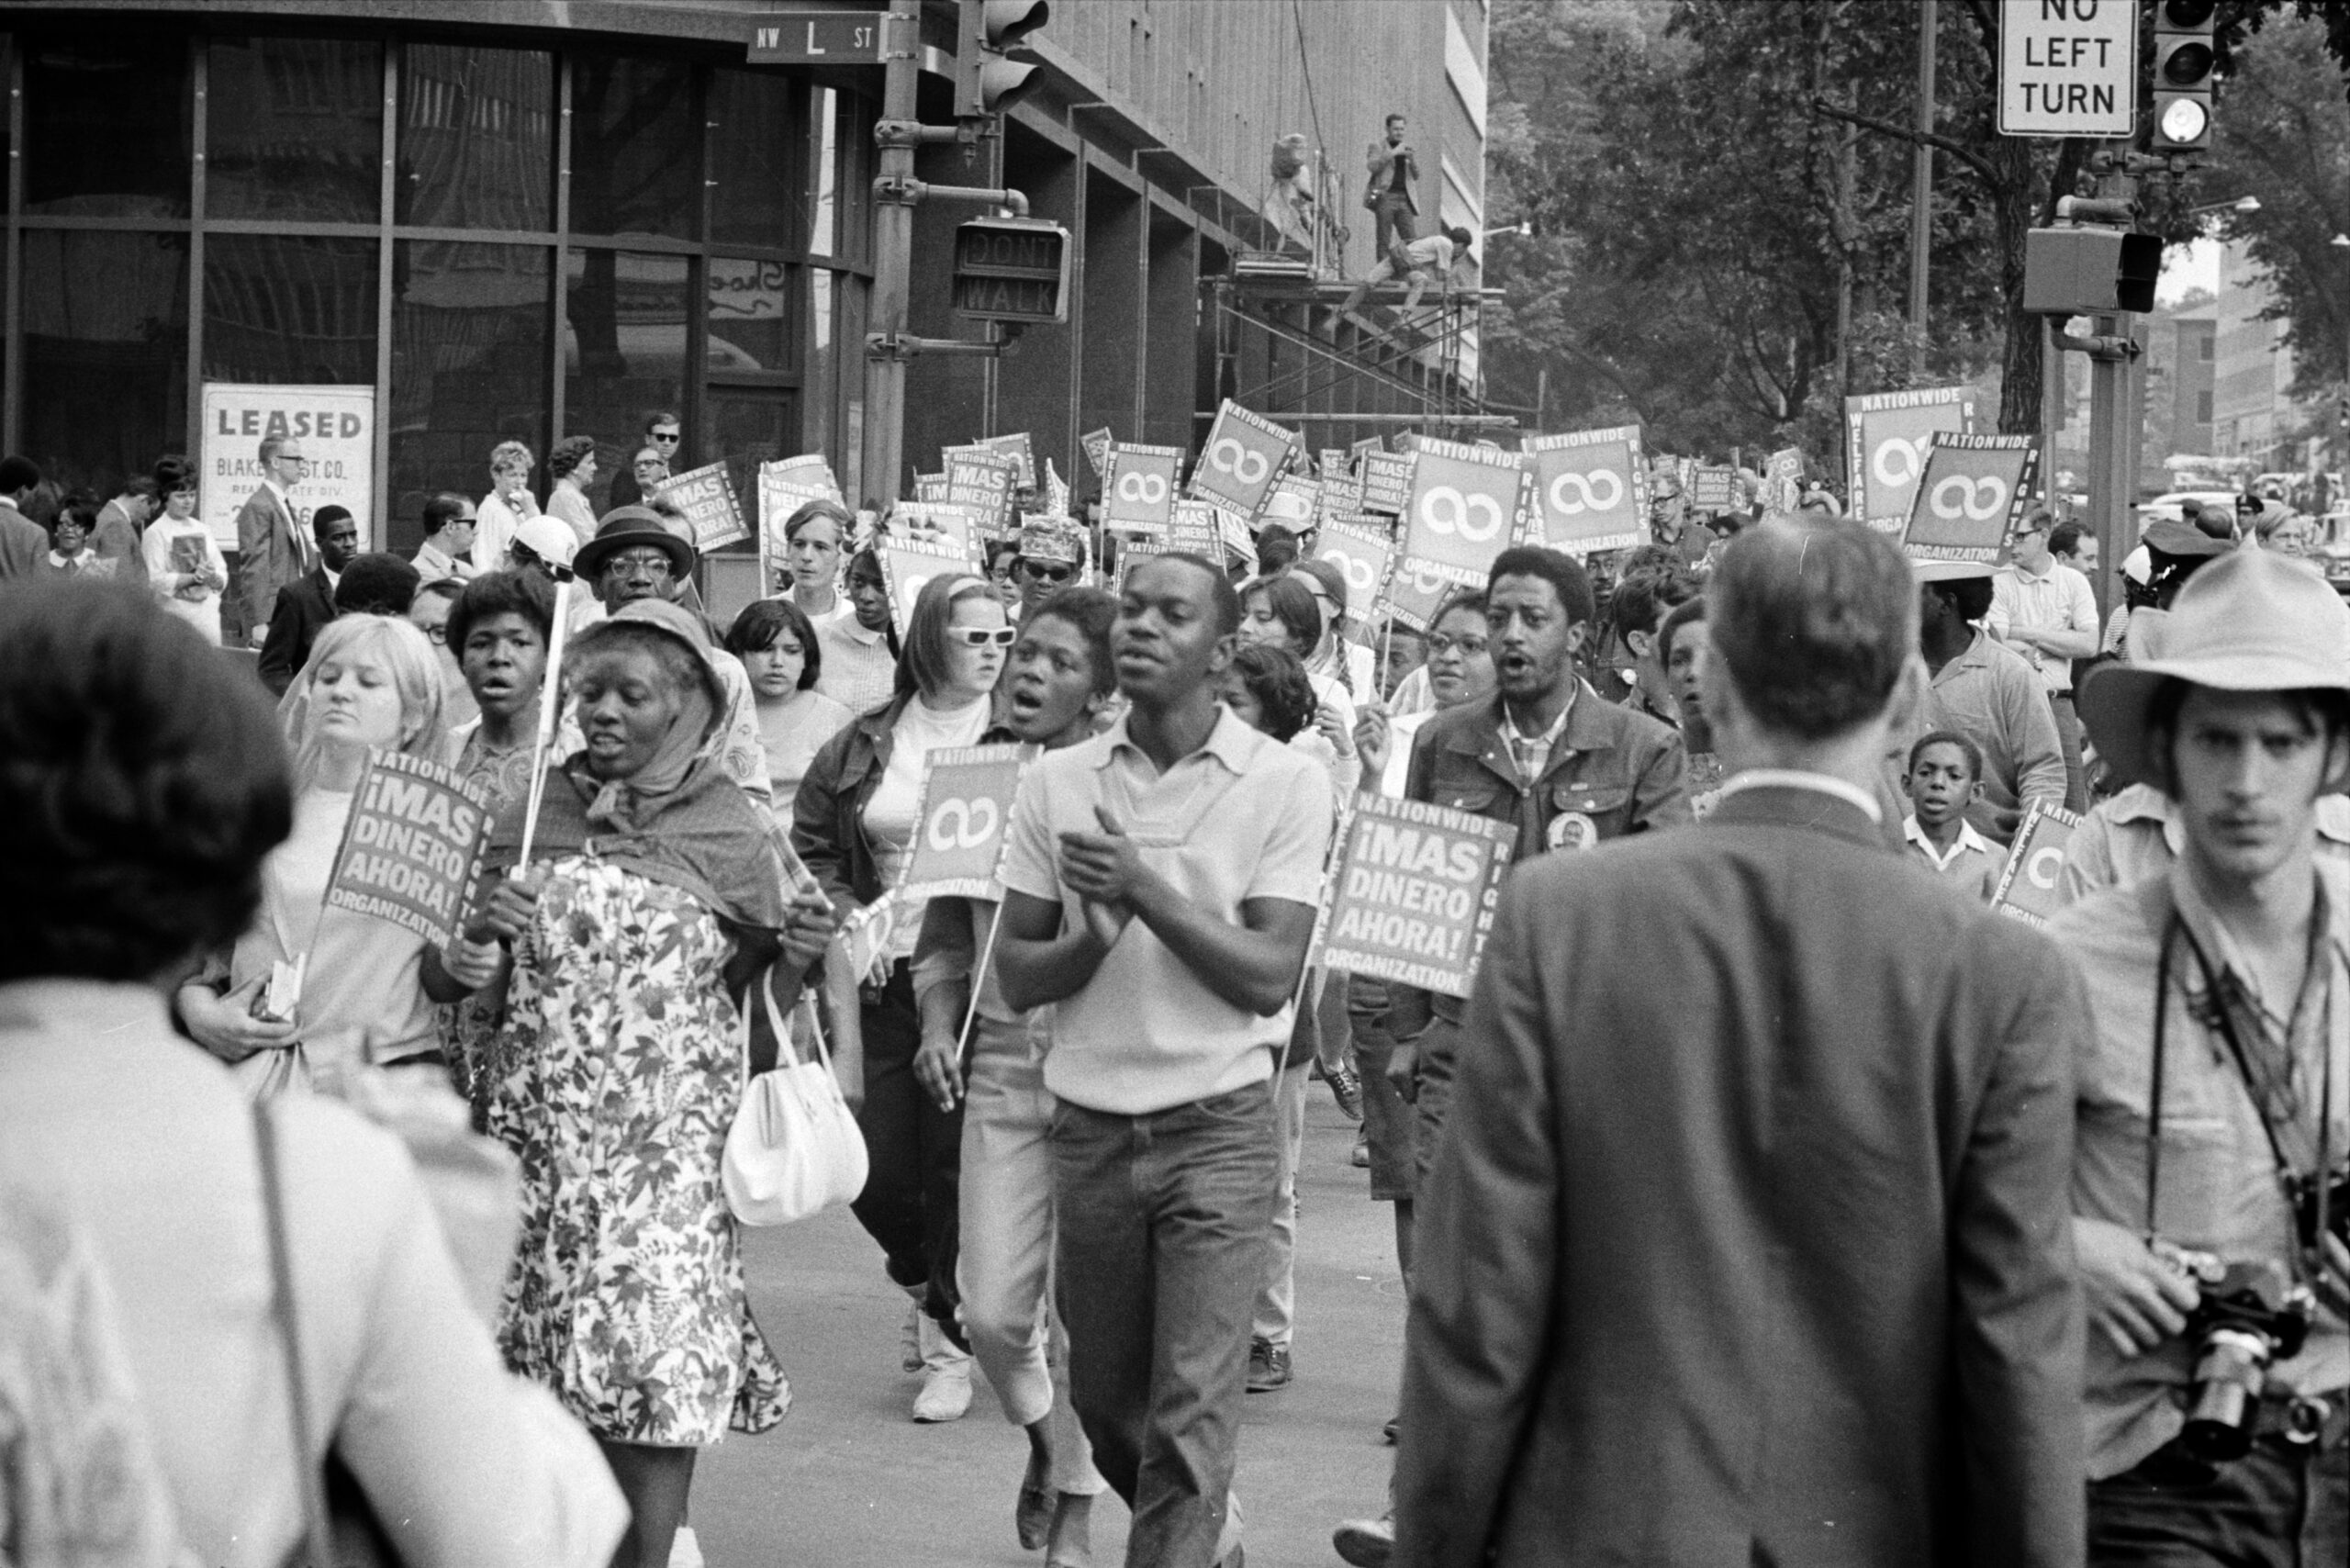 Les méthodes de non-violence active (sit-in, marches de protestation) remportèrent l’adhésion fervente de nombreux Noirs et Blancs libéraux.